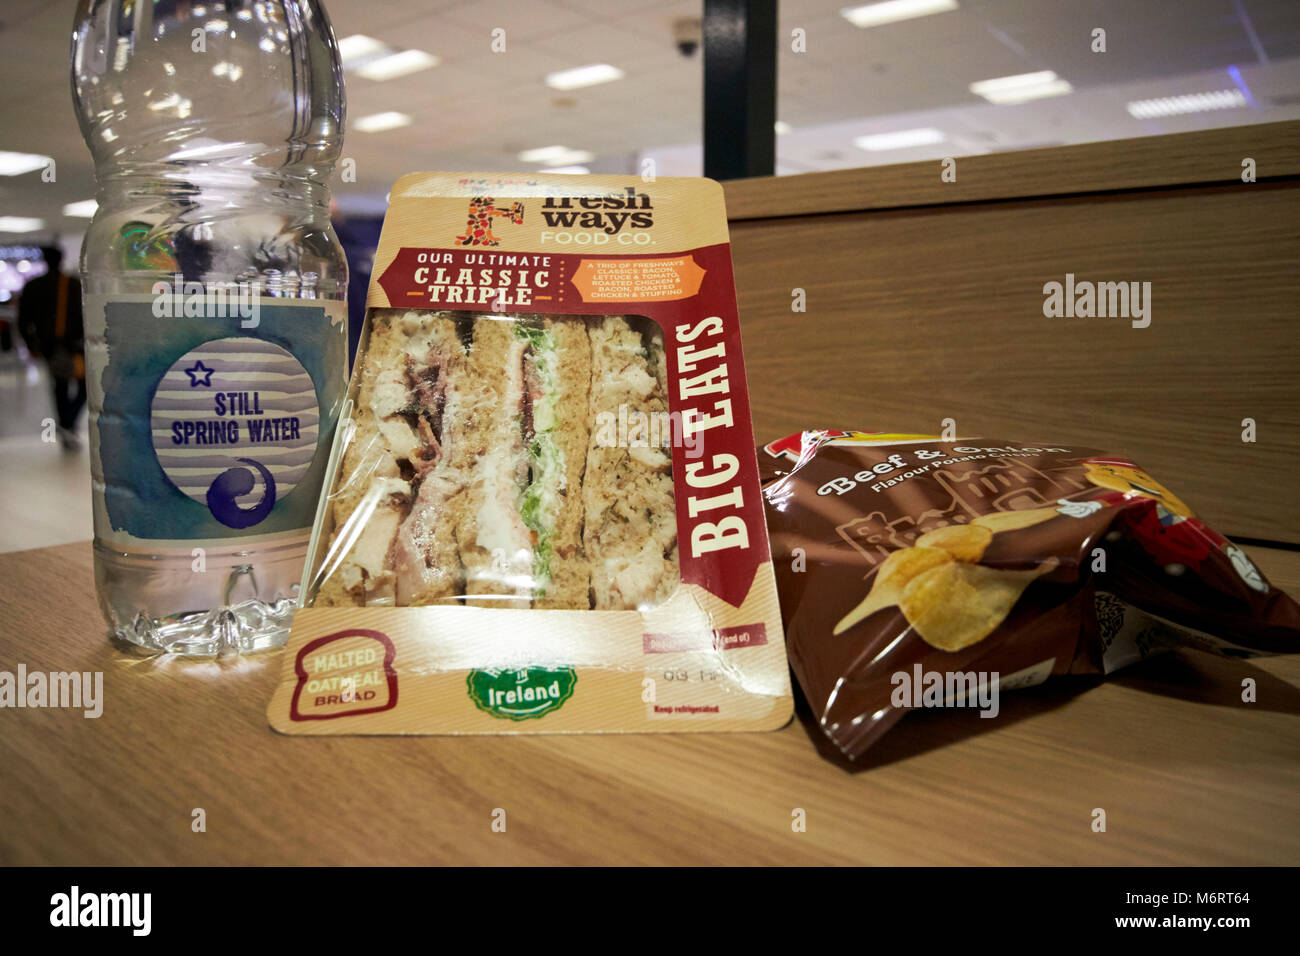 Supermarkt mittags billig Meal Deal von Sandwich Getränk und Snack in diesem Foto, Wasser, Triple Sandwich und chipstüte in Großbritannien Stockfoto